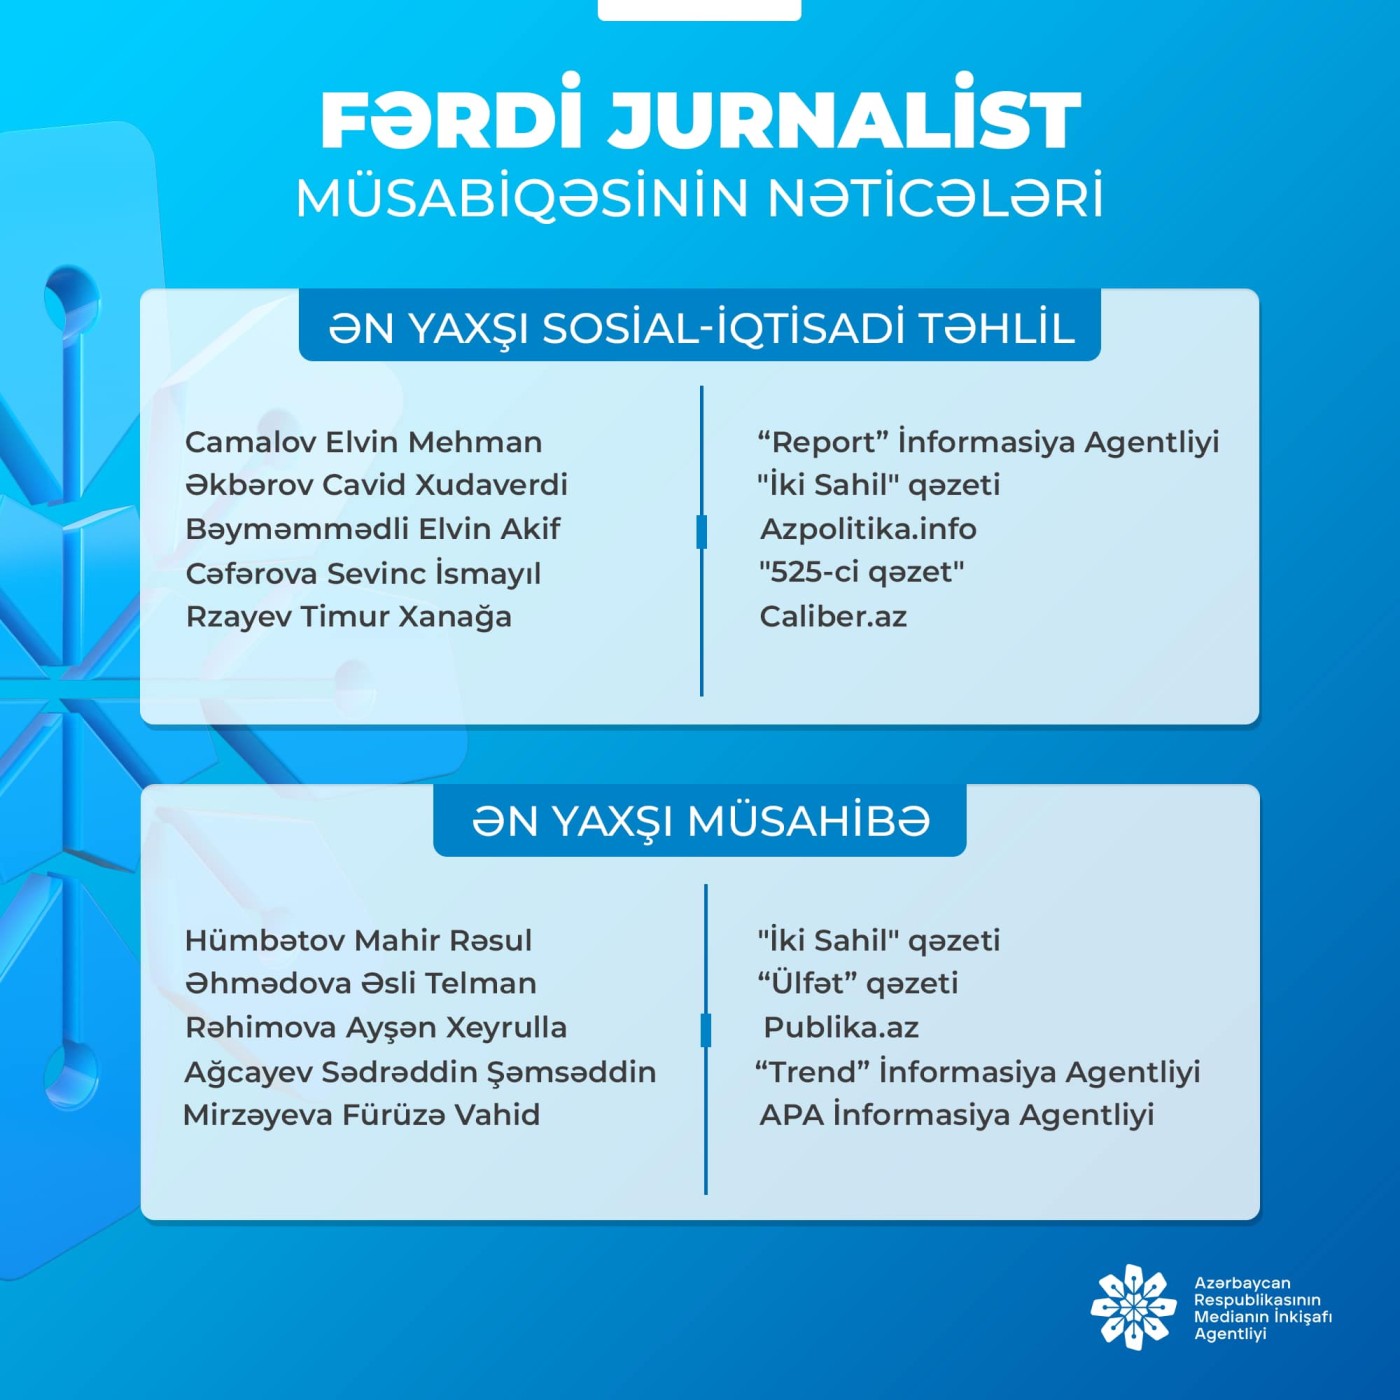 MEDİA “Fərdi jurnalist müsabiqəsi"nin nəticələrini açıqlayıb 